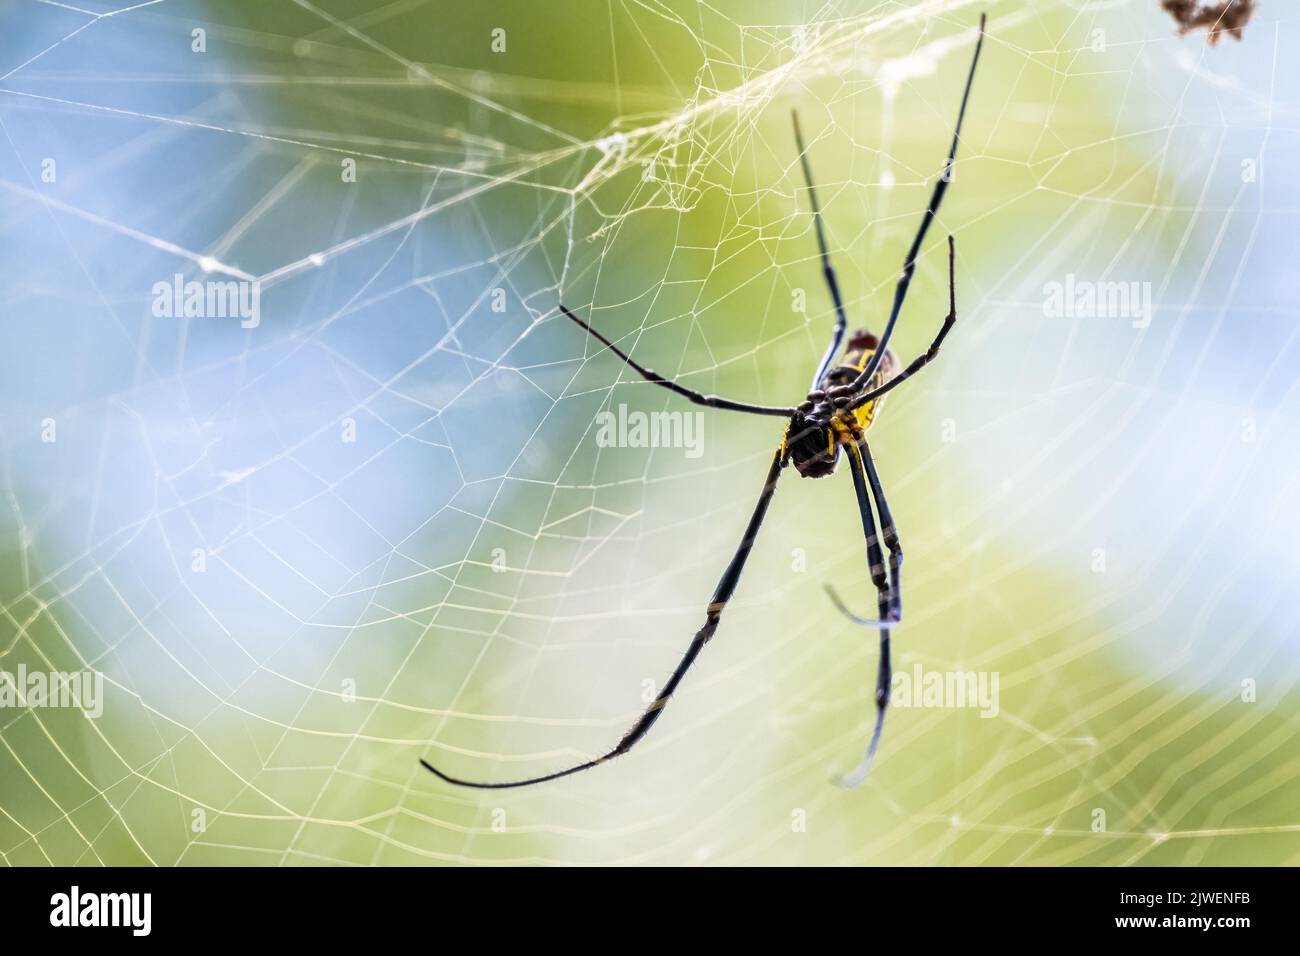 L'araignée Joro (Trichonila clavata), une espèce envahissante d'Asie qui se trouve maintenant en Géorgie et en Caroline du Sud aux États-Unis, sur son vaste réseau. Banque D'Images